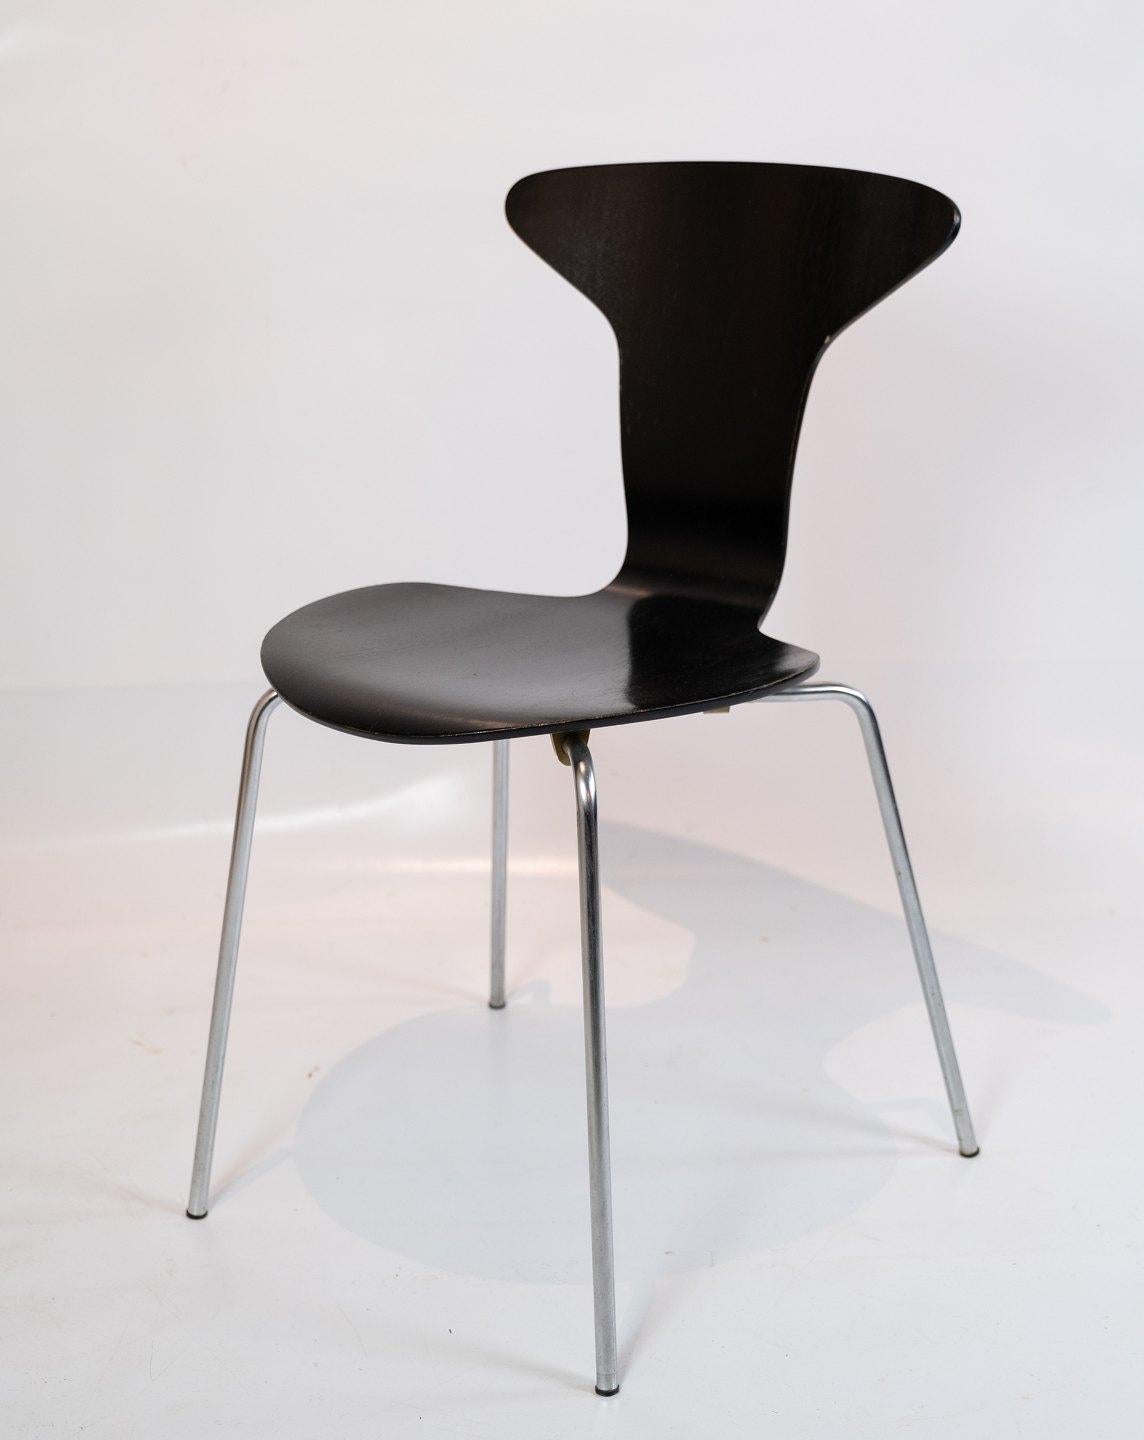 
L'ensemble de 6 chaises Munkegaard, conçu par l'emblématique Arne Jacobsen en 1955, incarne l'excellence du design danois. Fabriquées avec une attention méticuleuse aux détails, ces chaises sont une représentation intemporelle du style moderne du